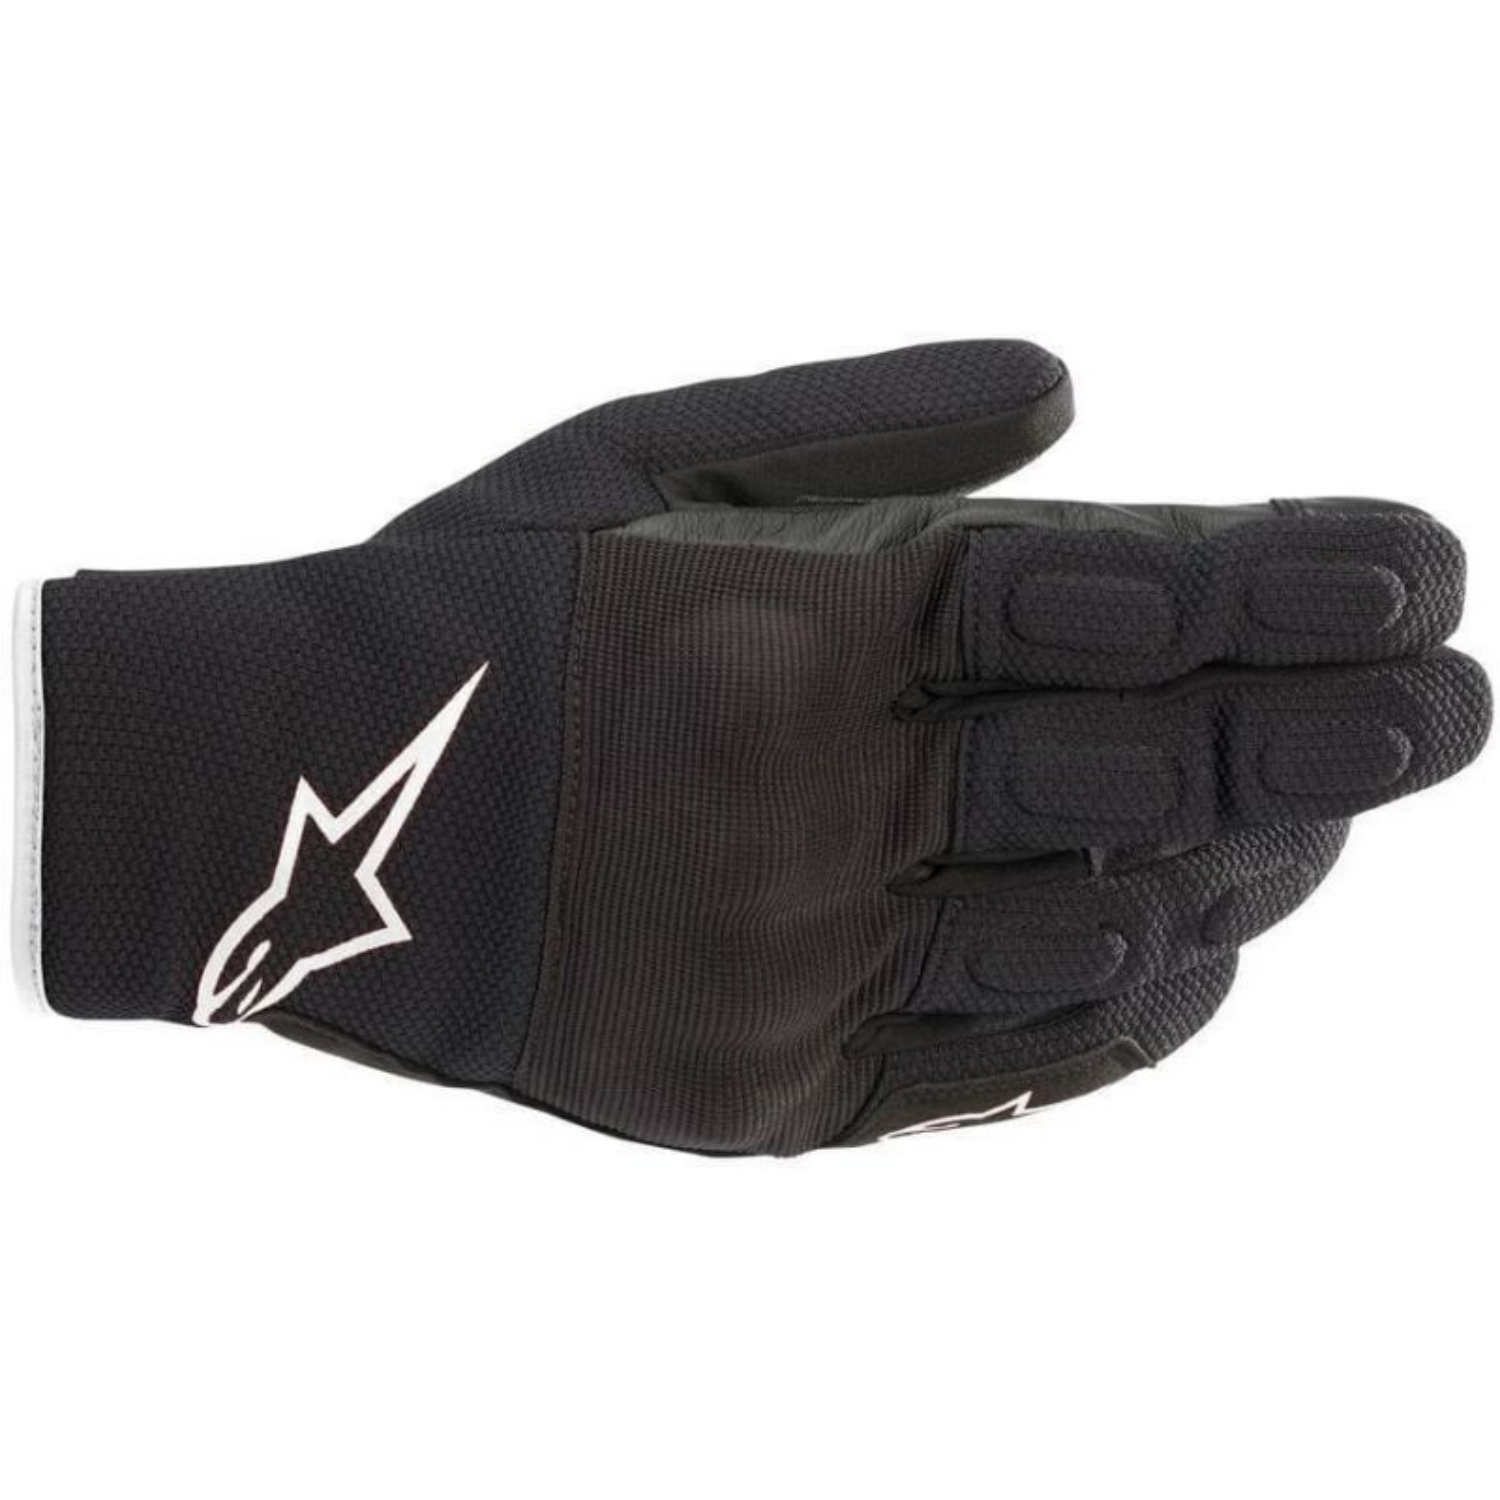 Image of Alpinestars S Max Drystar Gloves Black White Größe 3XL